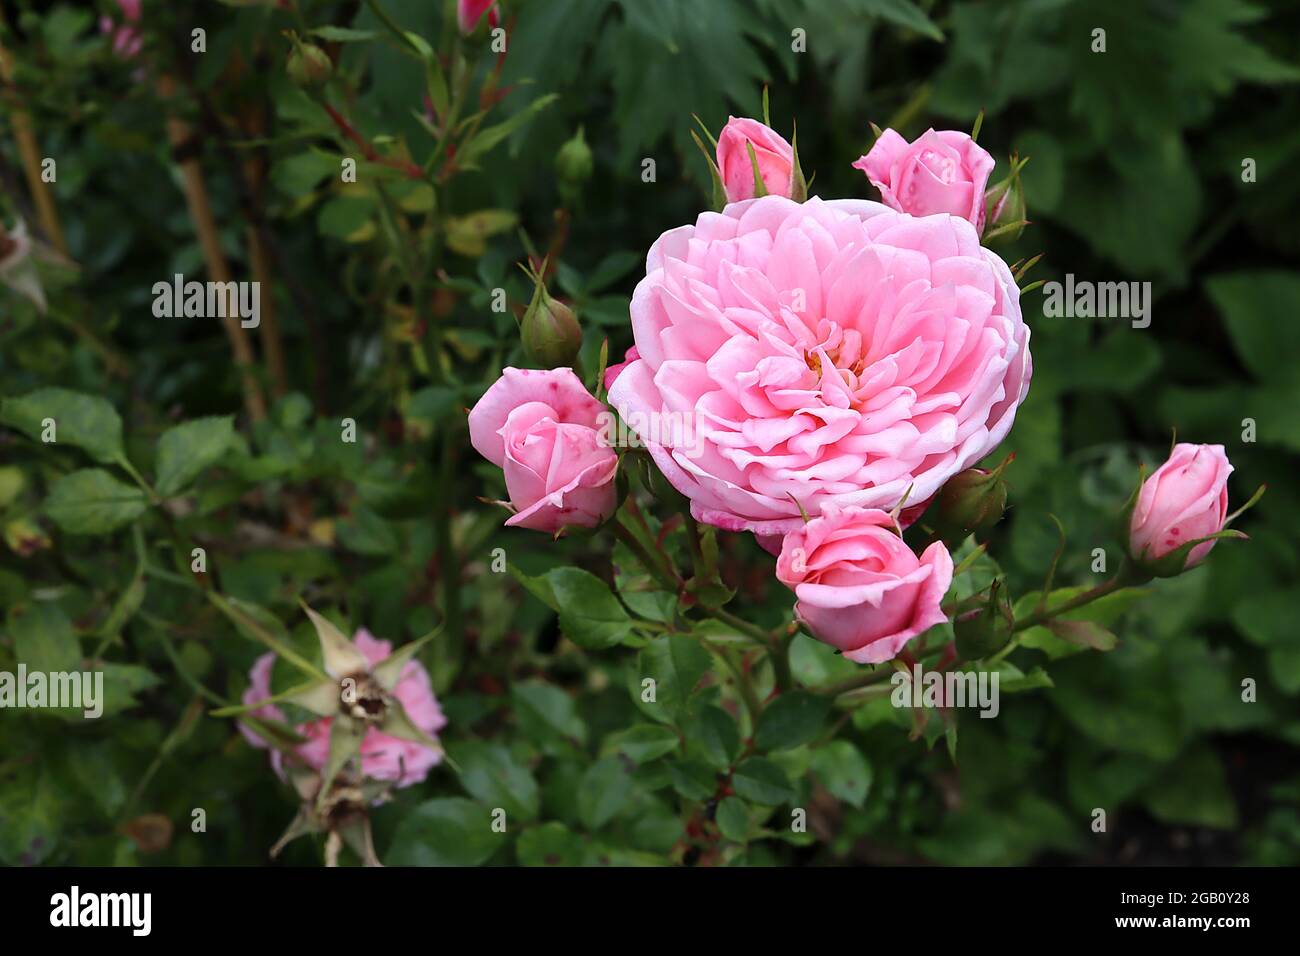 Rosa ‘die Fee’ (Strauchrose) stieg die Fee – kleine zweifache blassrosa Blüten, mehrstämmiges Blütenmuster, Juni, England, Großbritannien Stockfoto